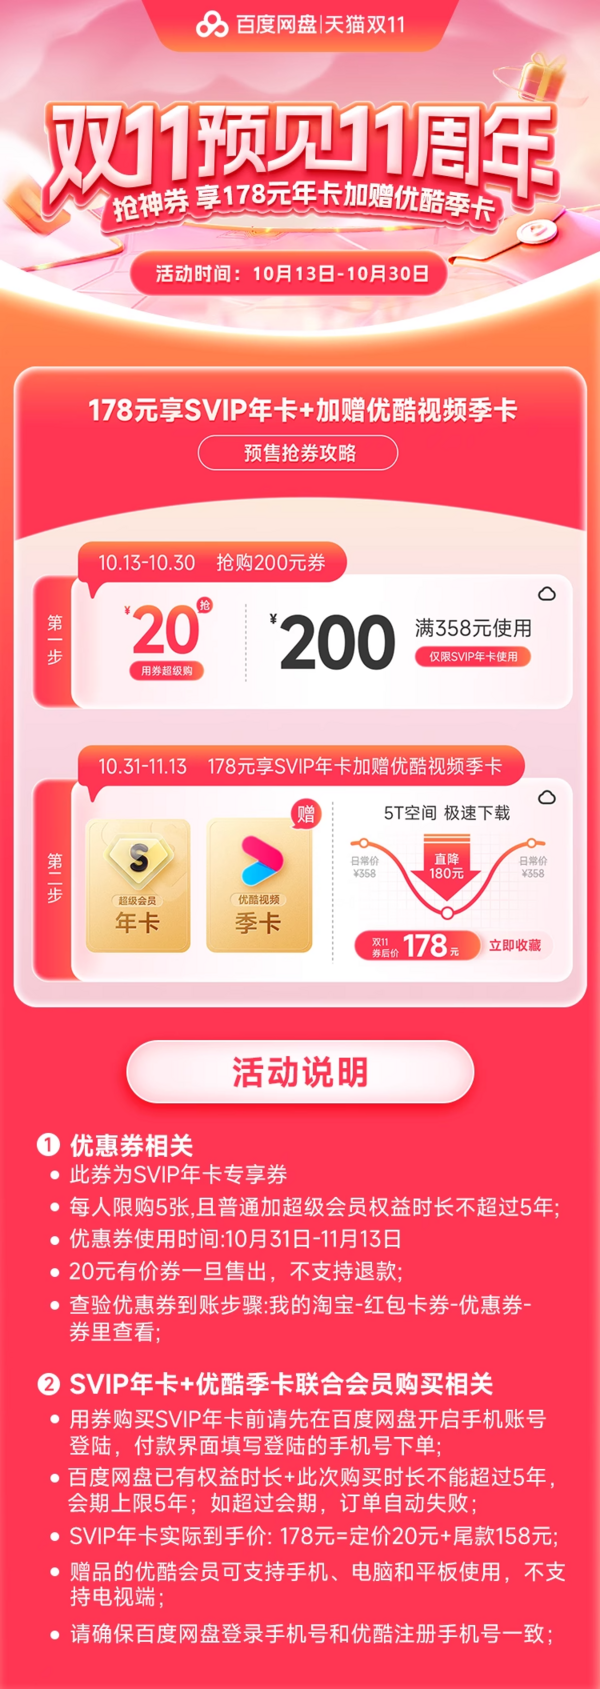 Baidu 百度 网盘 超级会员年卡 SVIP + 优酷视频季卡